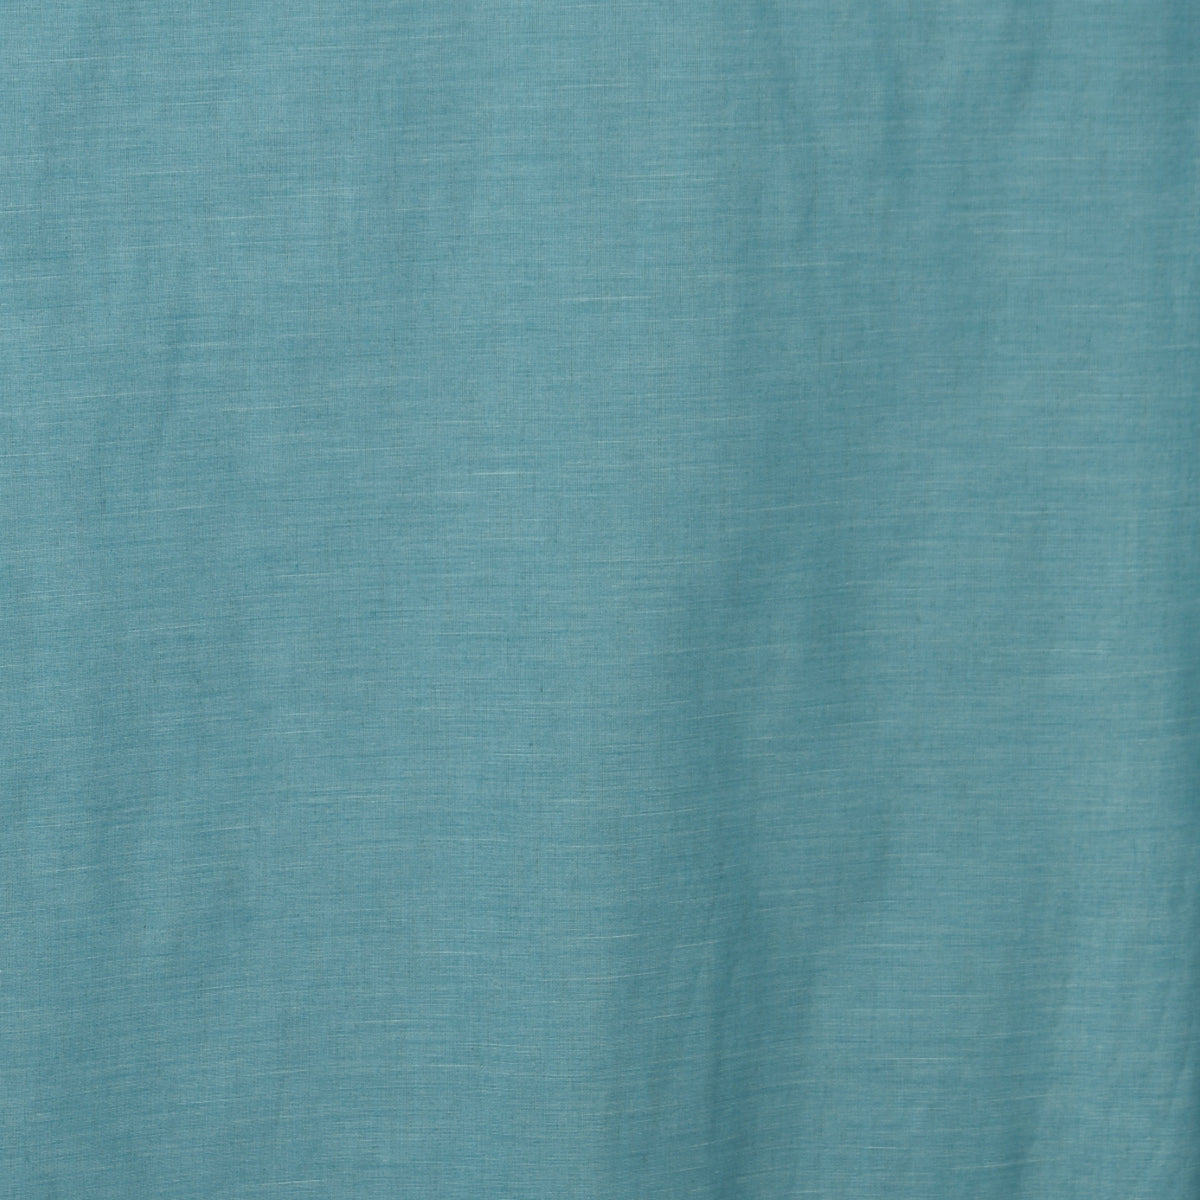 Night curtain turquoise Mina